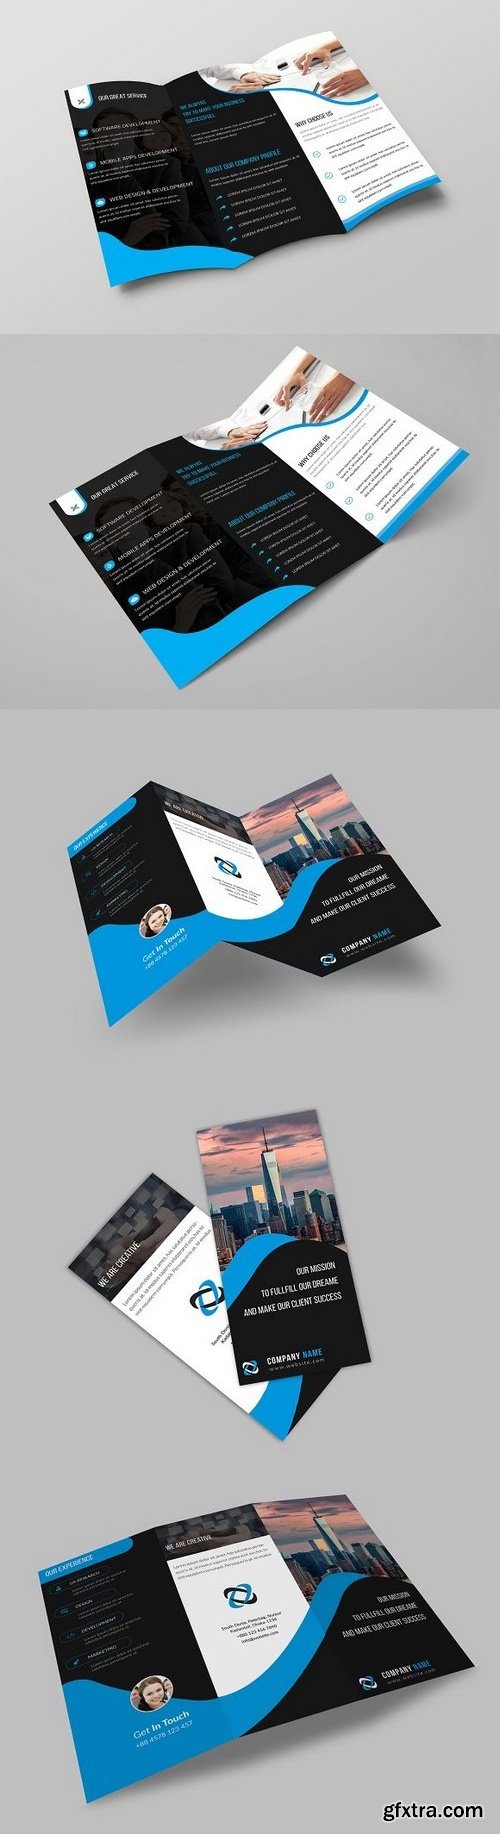 CM - Corporate Tri Fold Brochure Template 1218231